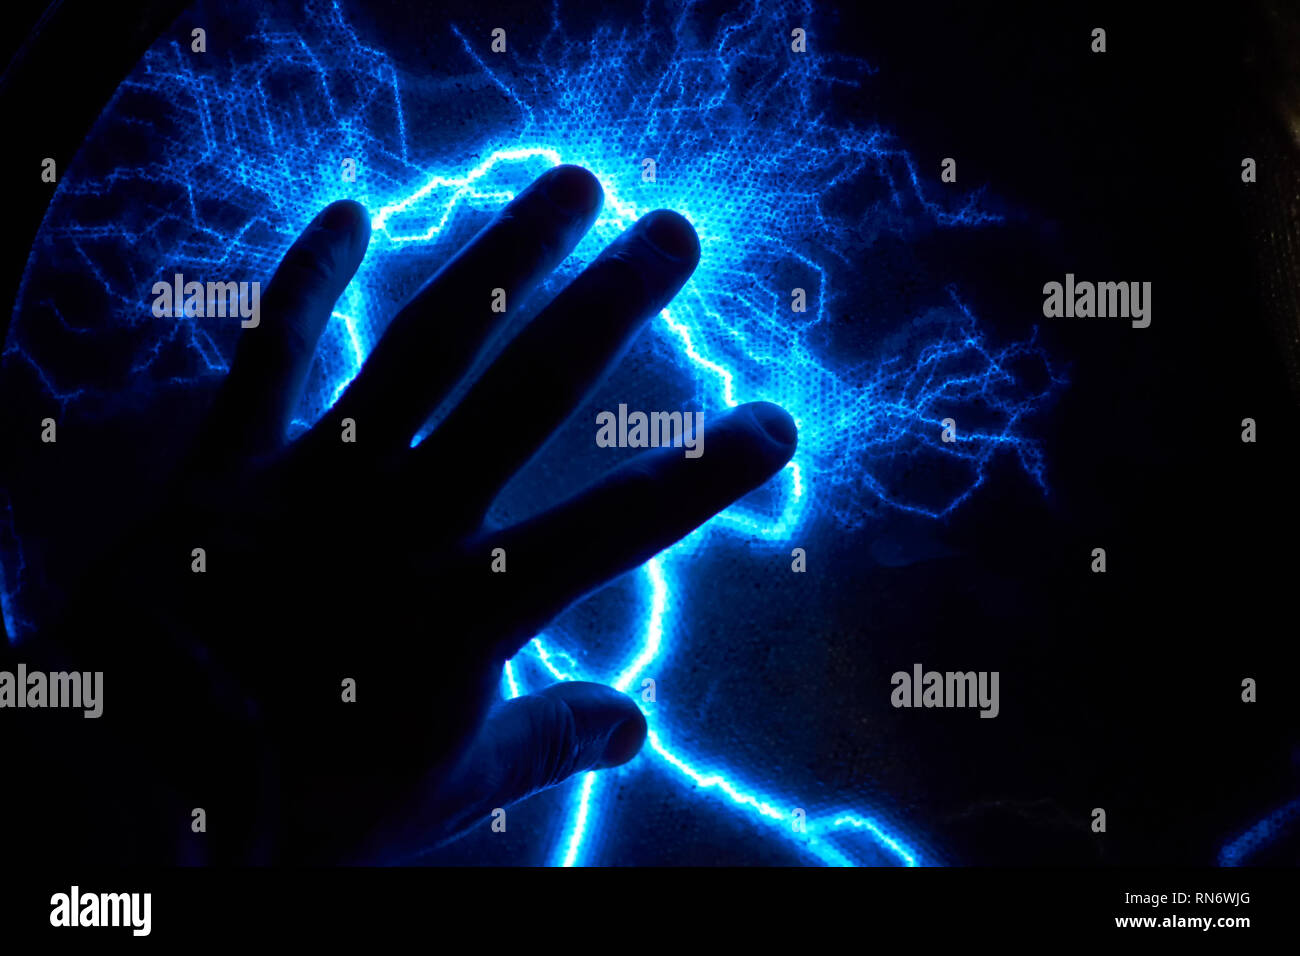 Boule de plasma électrique sur fond sombre. Modèle d'électricité statique Banque D'Images